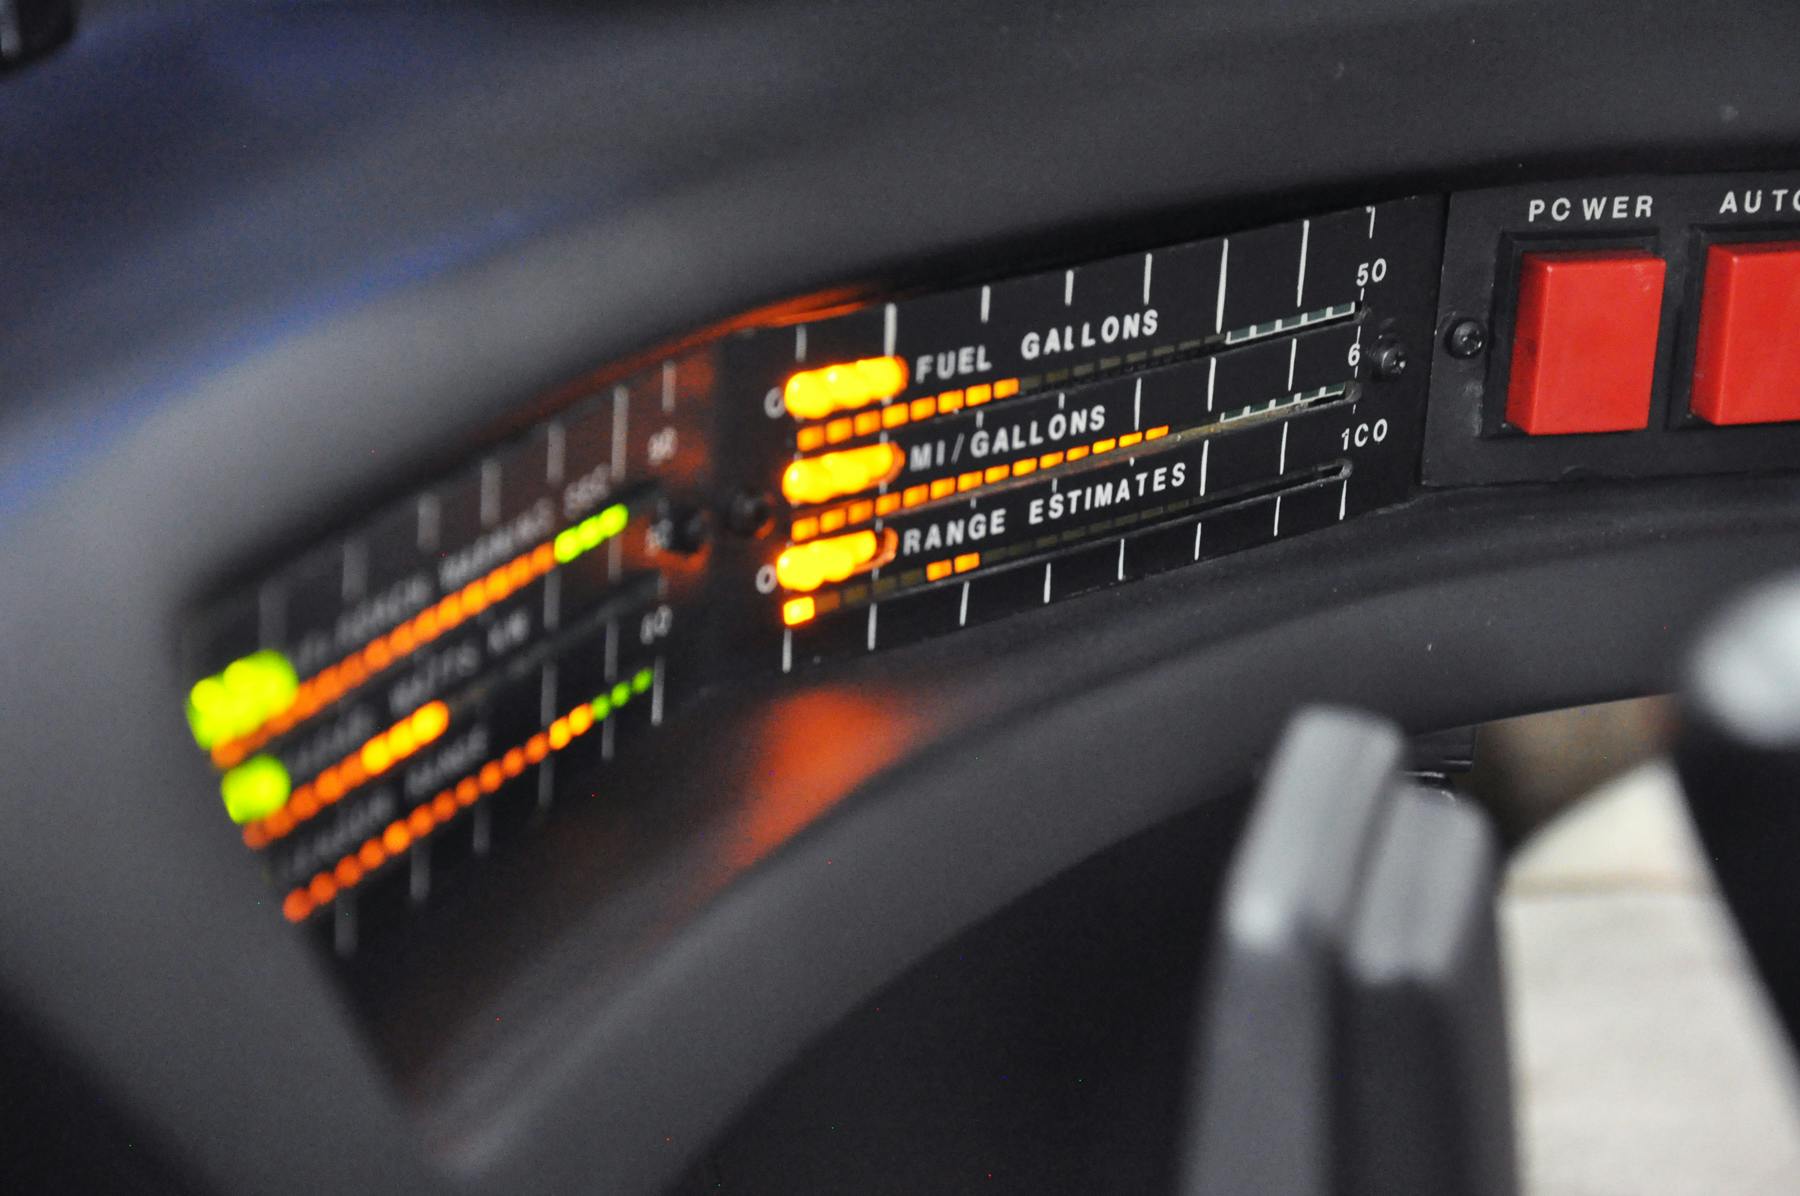 KITT - 1982 Pontiac Firebird Trans Am - Fuel gauge